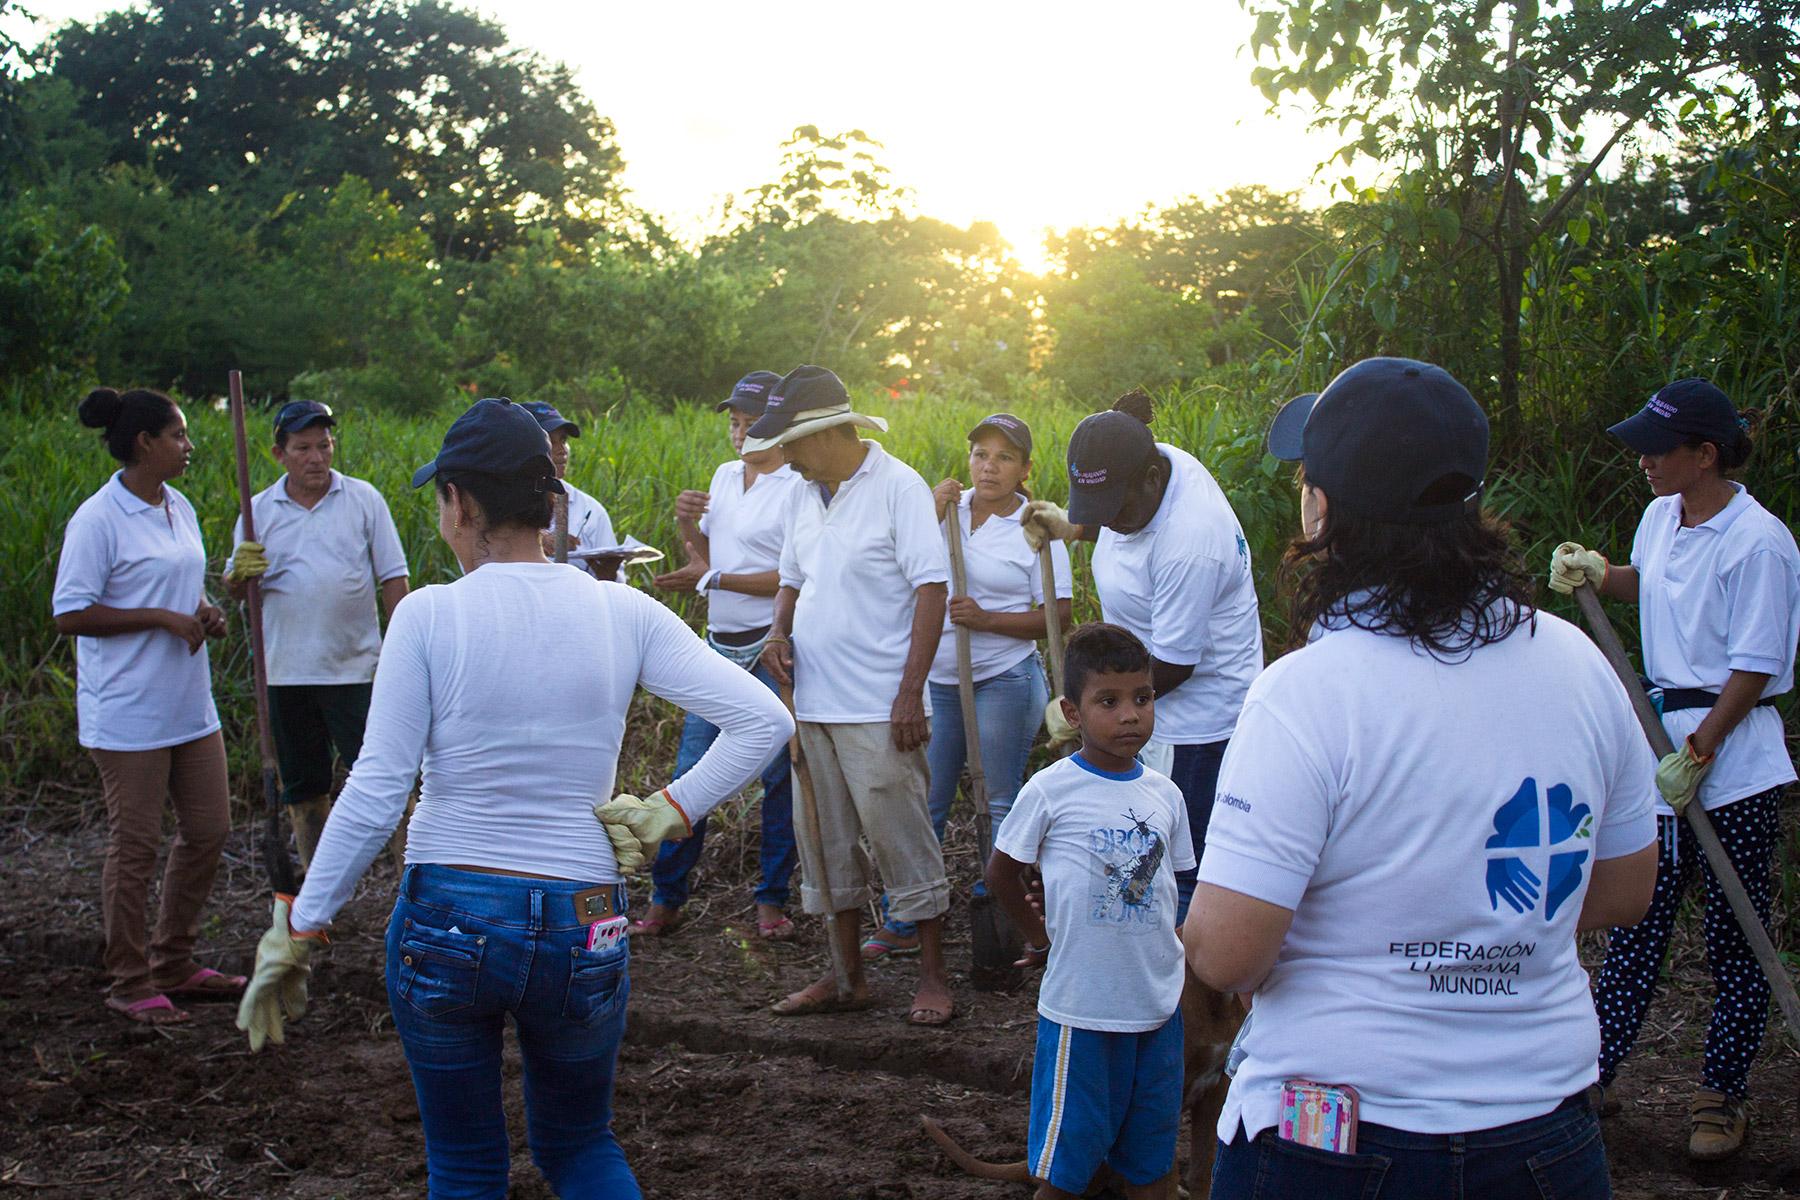 In Kolumbien hat der LWB durch Aktivitäten zur Förderung von Umweltschutz geholfen, die Resilienz von Menschen zu stärken, die in informellen Migrantensiedlungen leben. Foto: LWB-Kolumbien/Diego Alvarez Ramirez